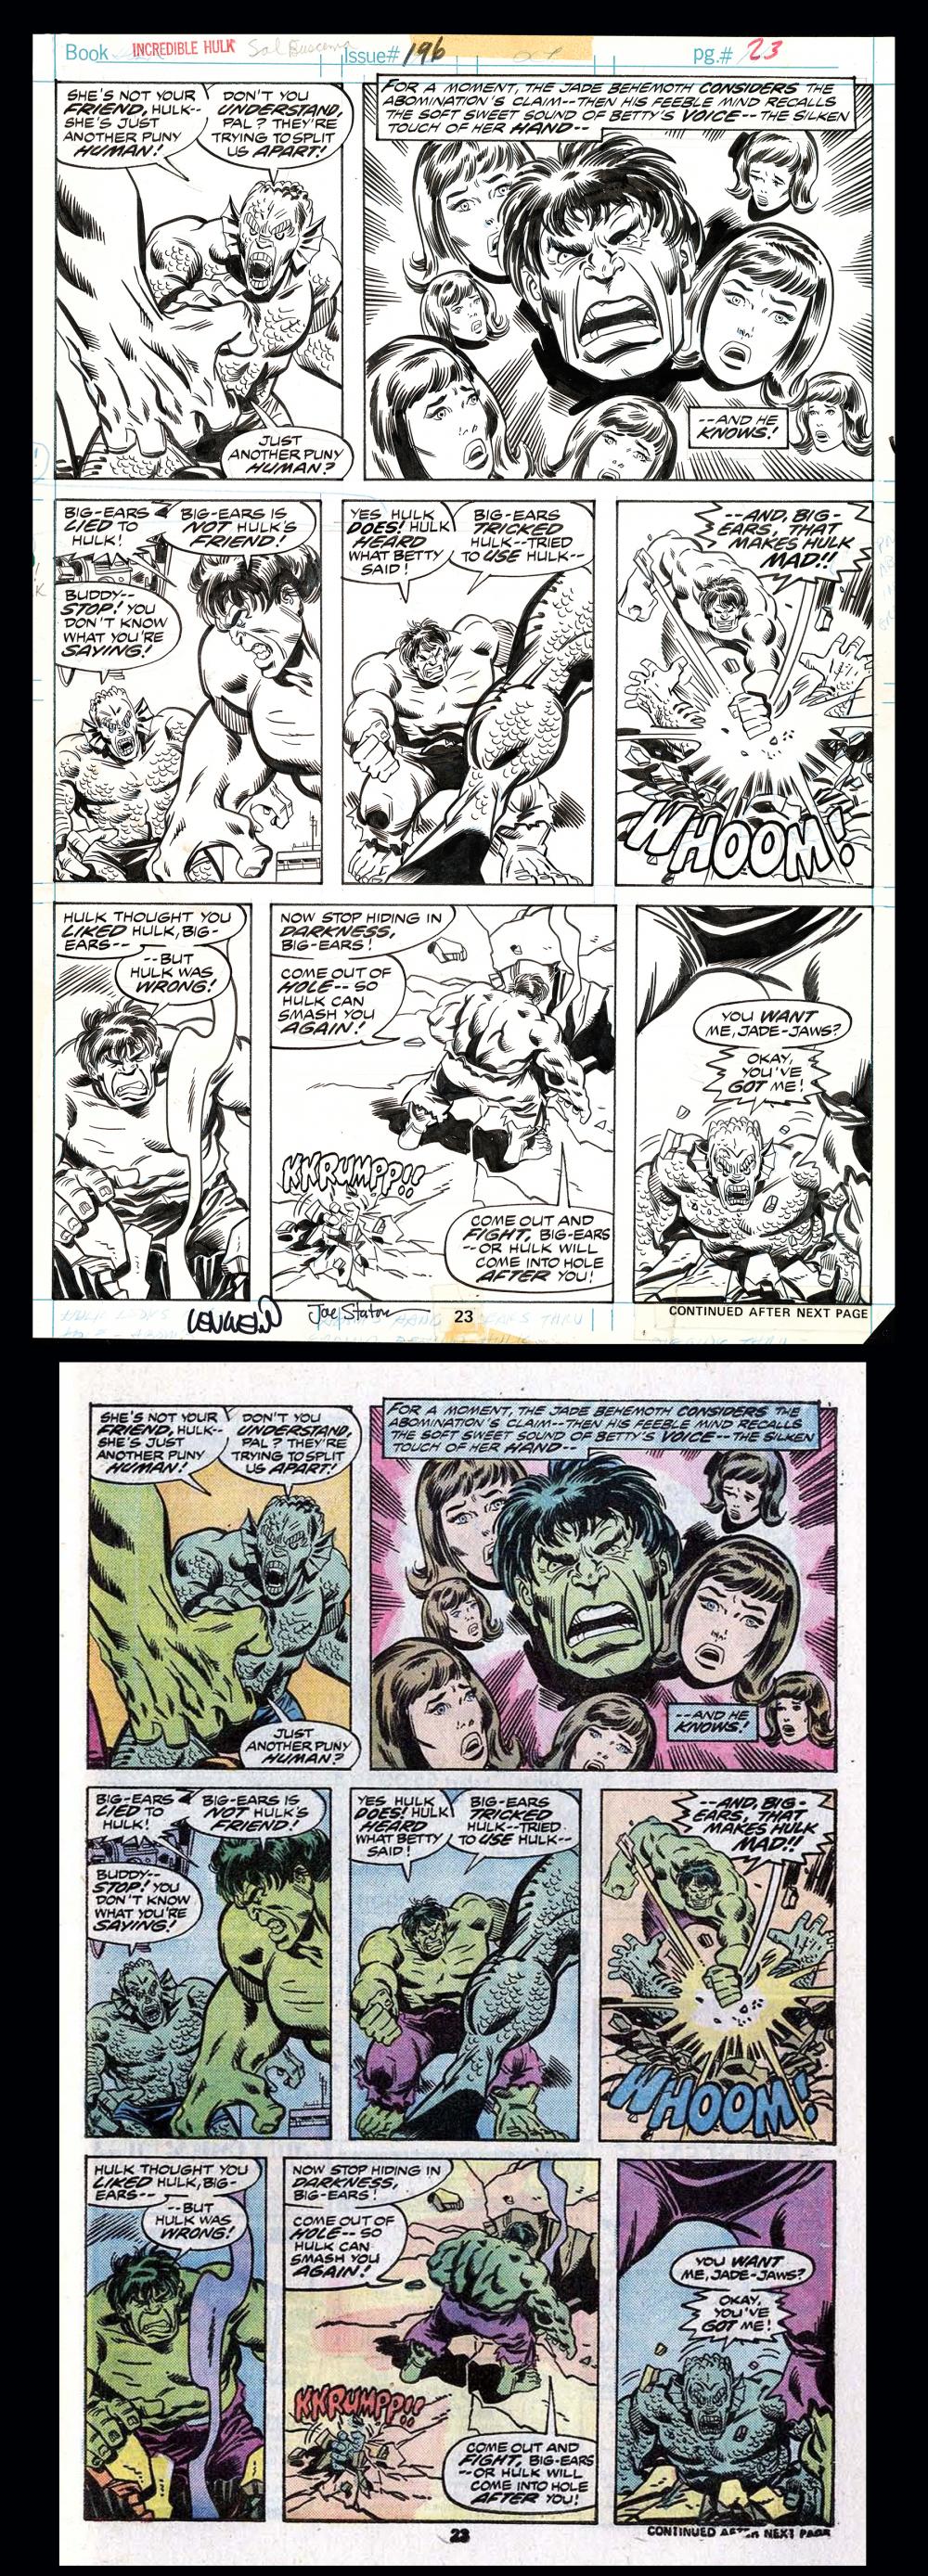 Image: Incredible Hulk #196 Original art by Sal Buscema